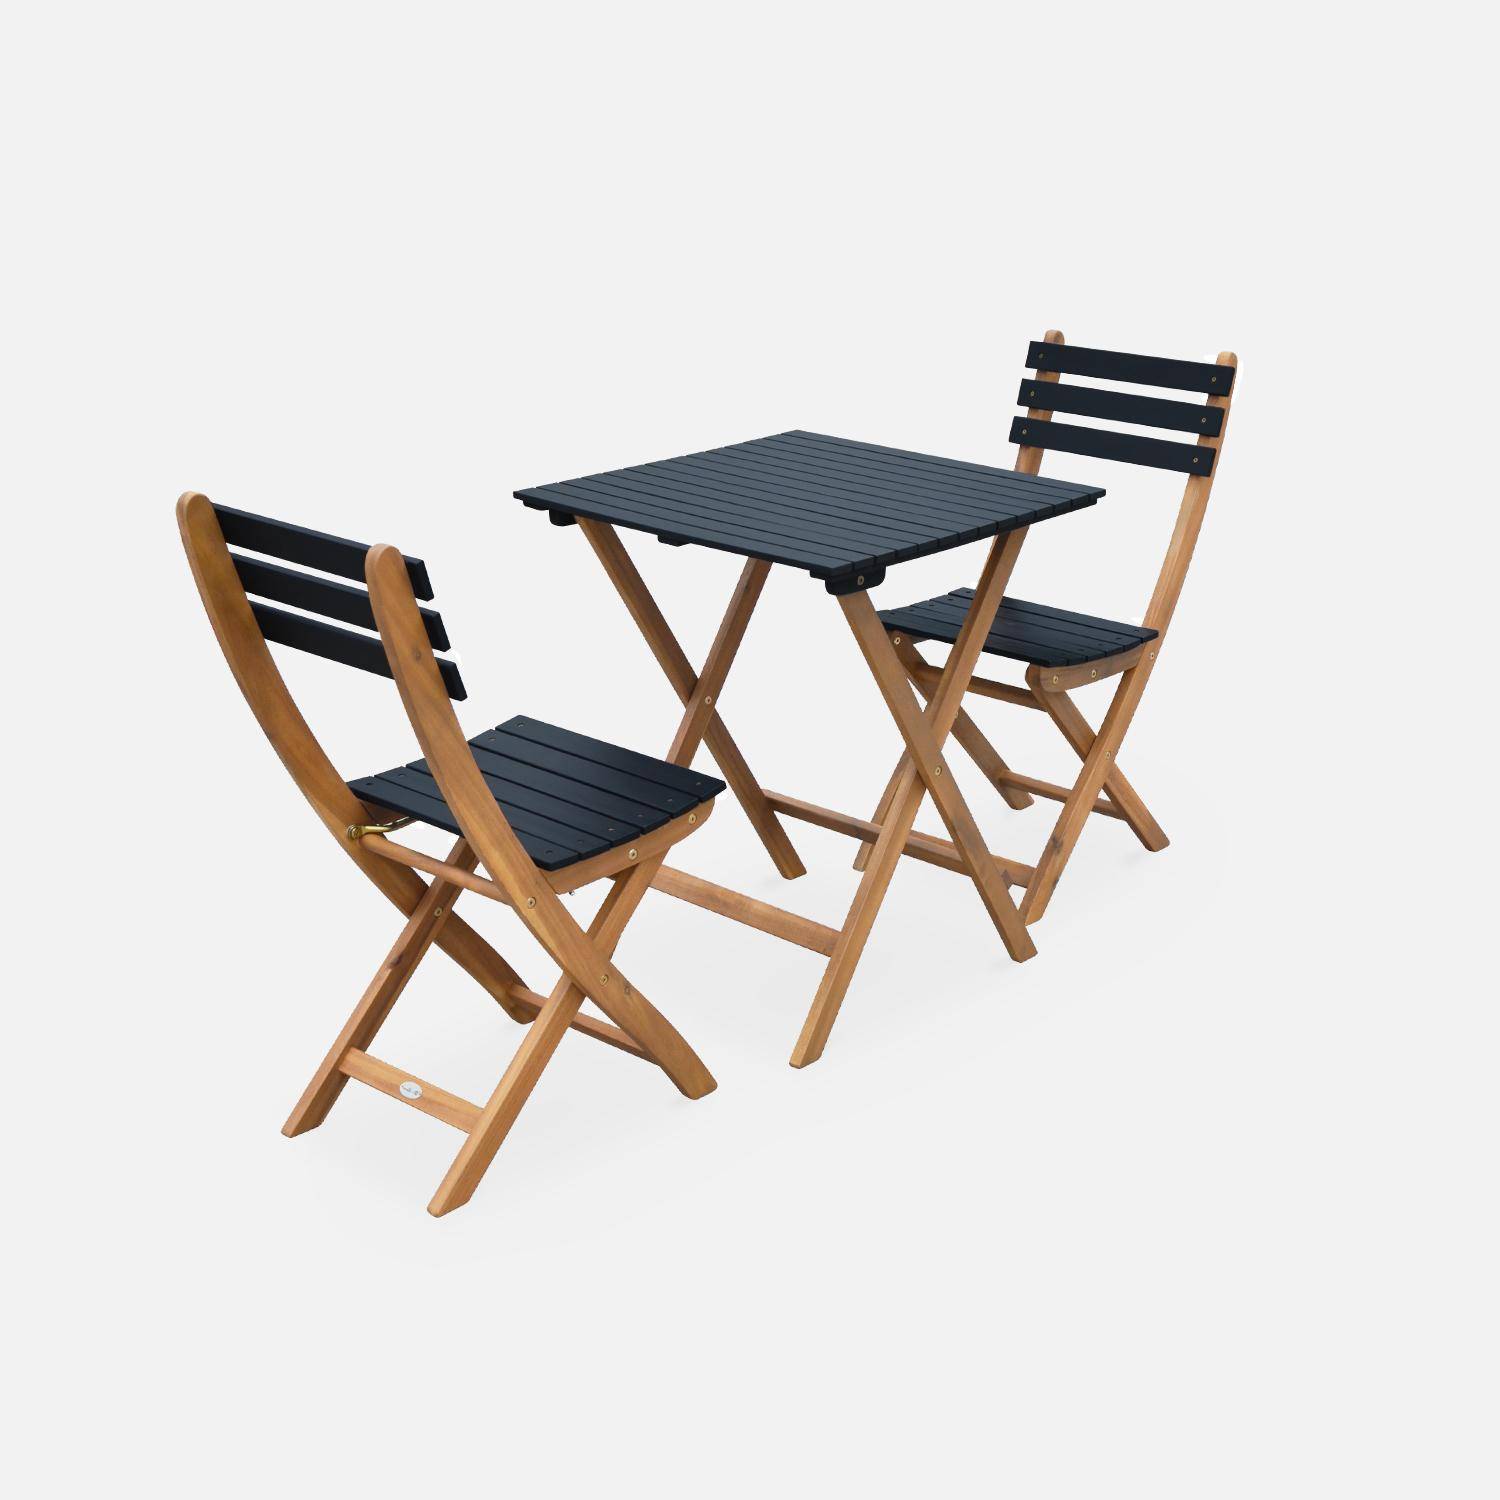 Mesa de jardín de madera Bistro 60x60cm negro, mesa plegable cuadrada. 2 sillas